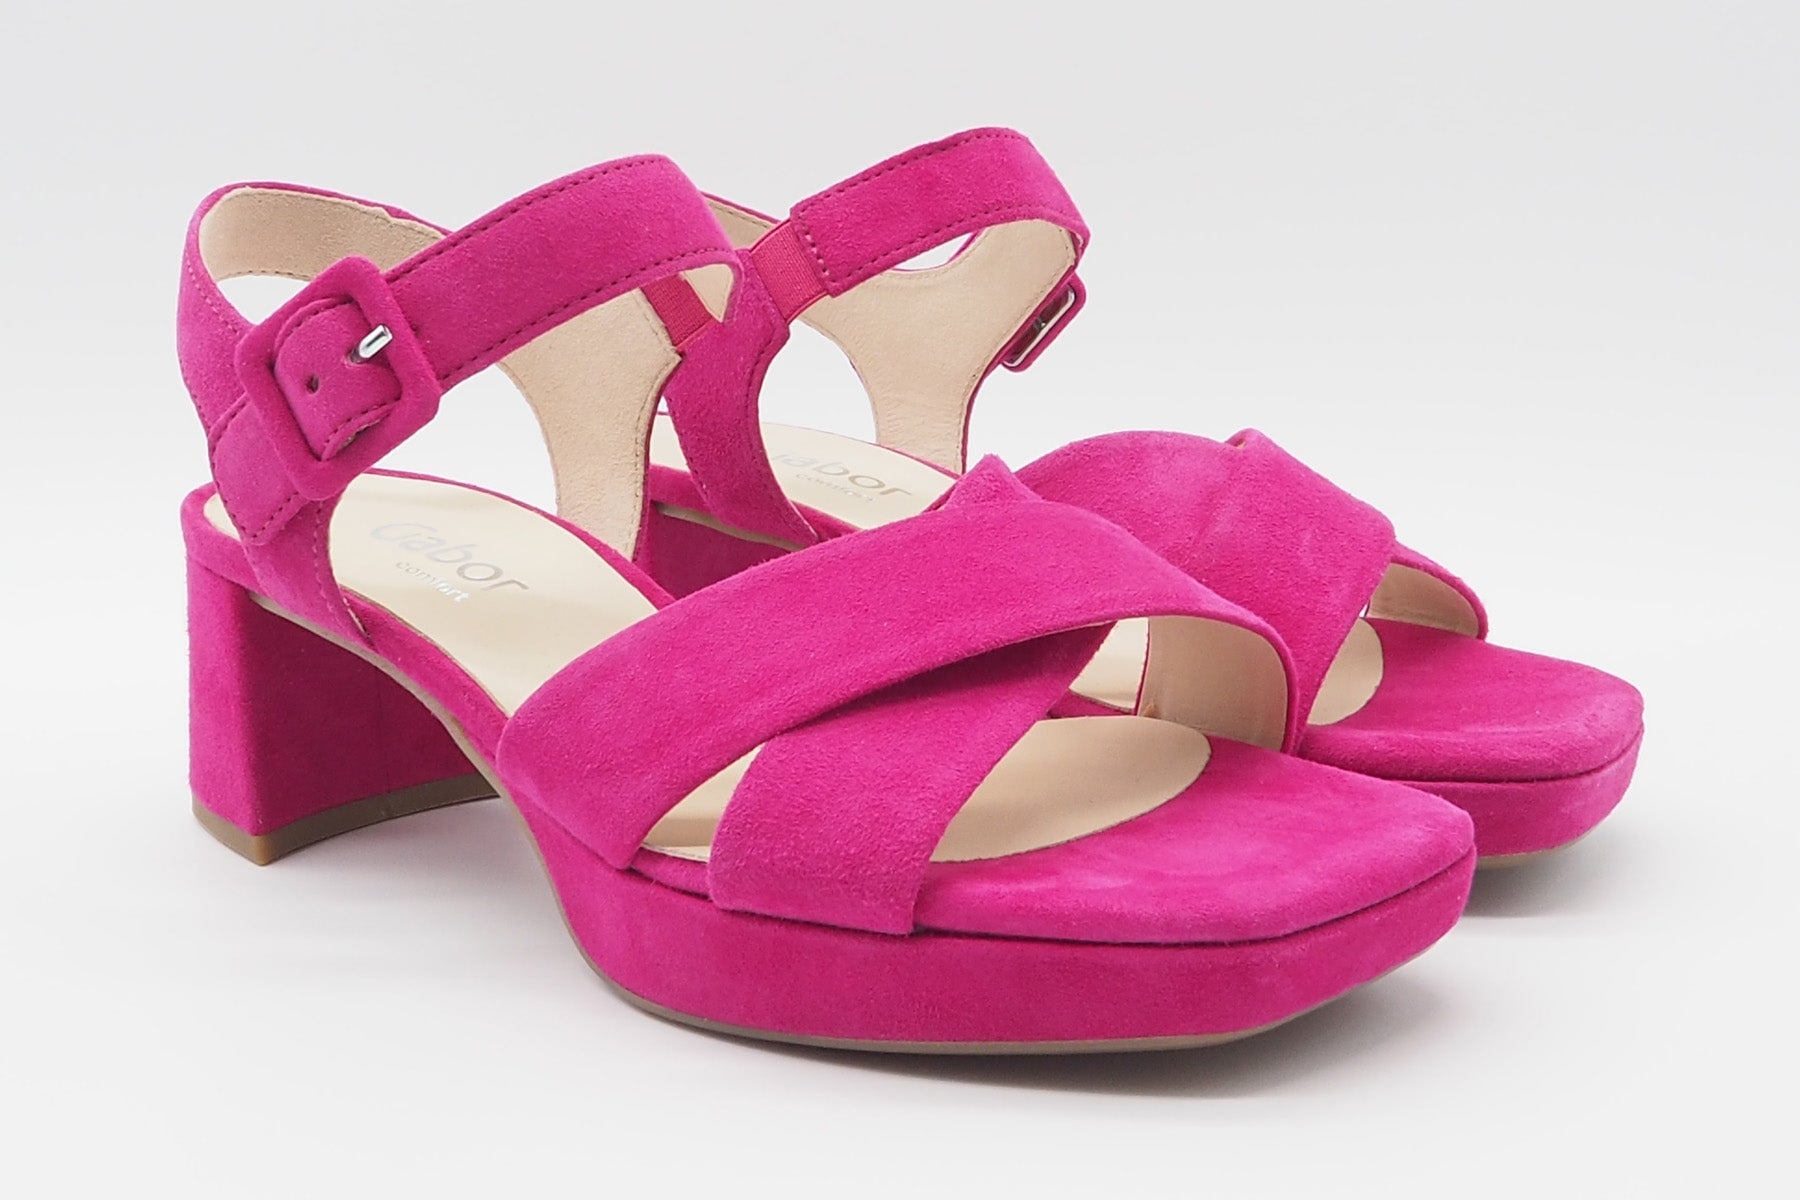 Feine Damen Absatz-Sandale aus Veloursleder in Pink - Absatz 6cm Damen Sandalen Gabor 